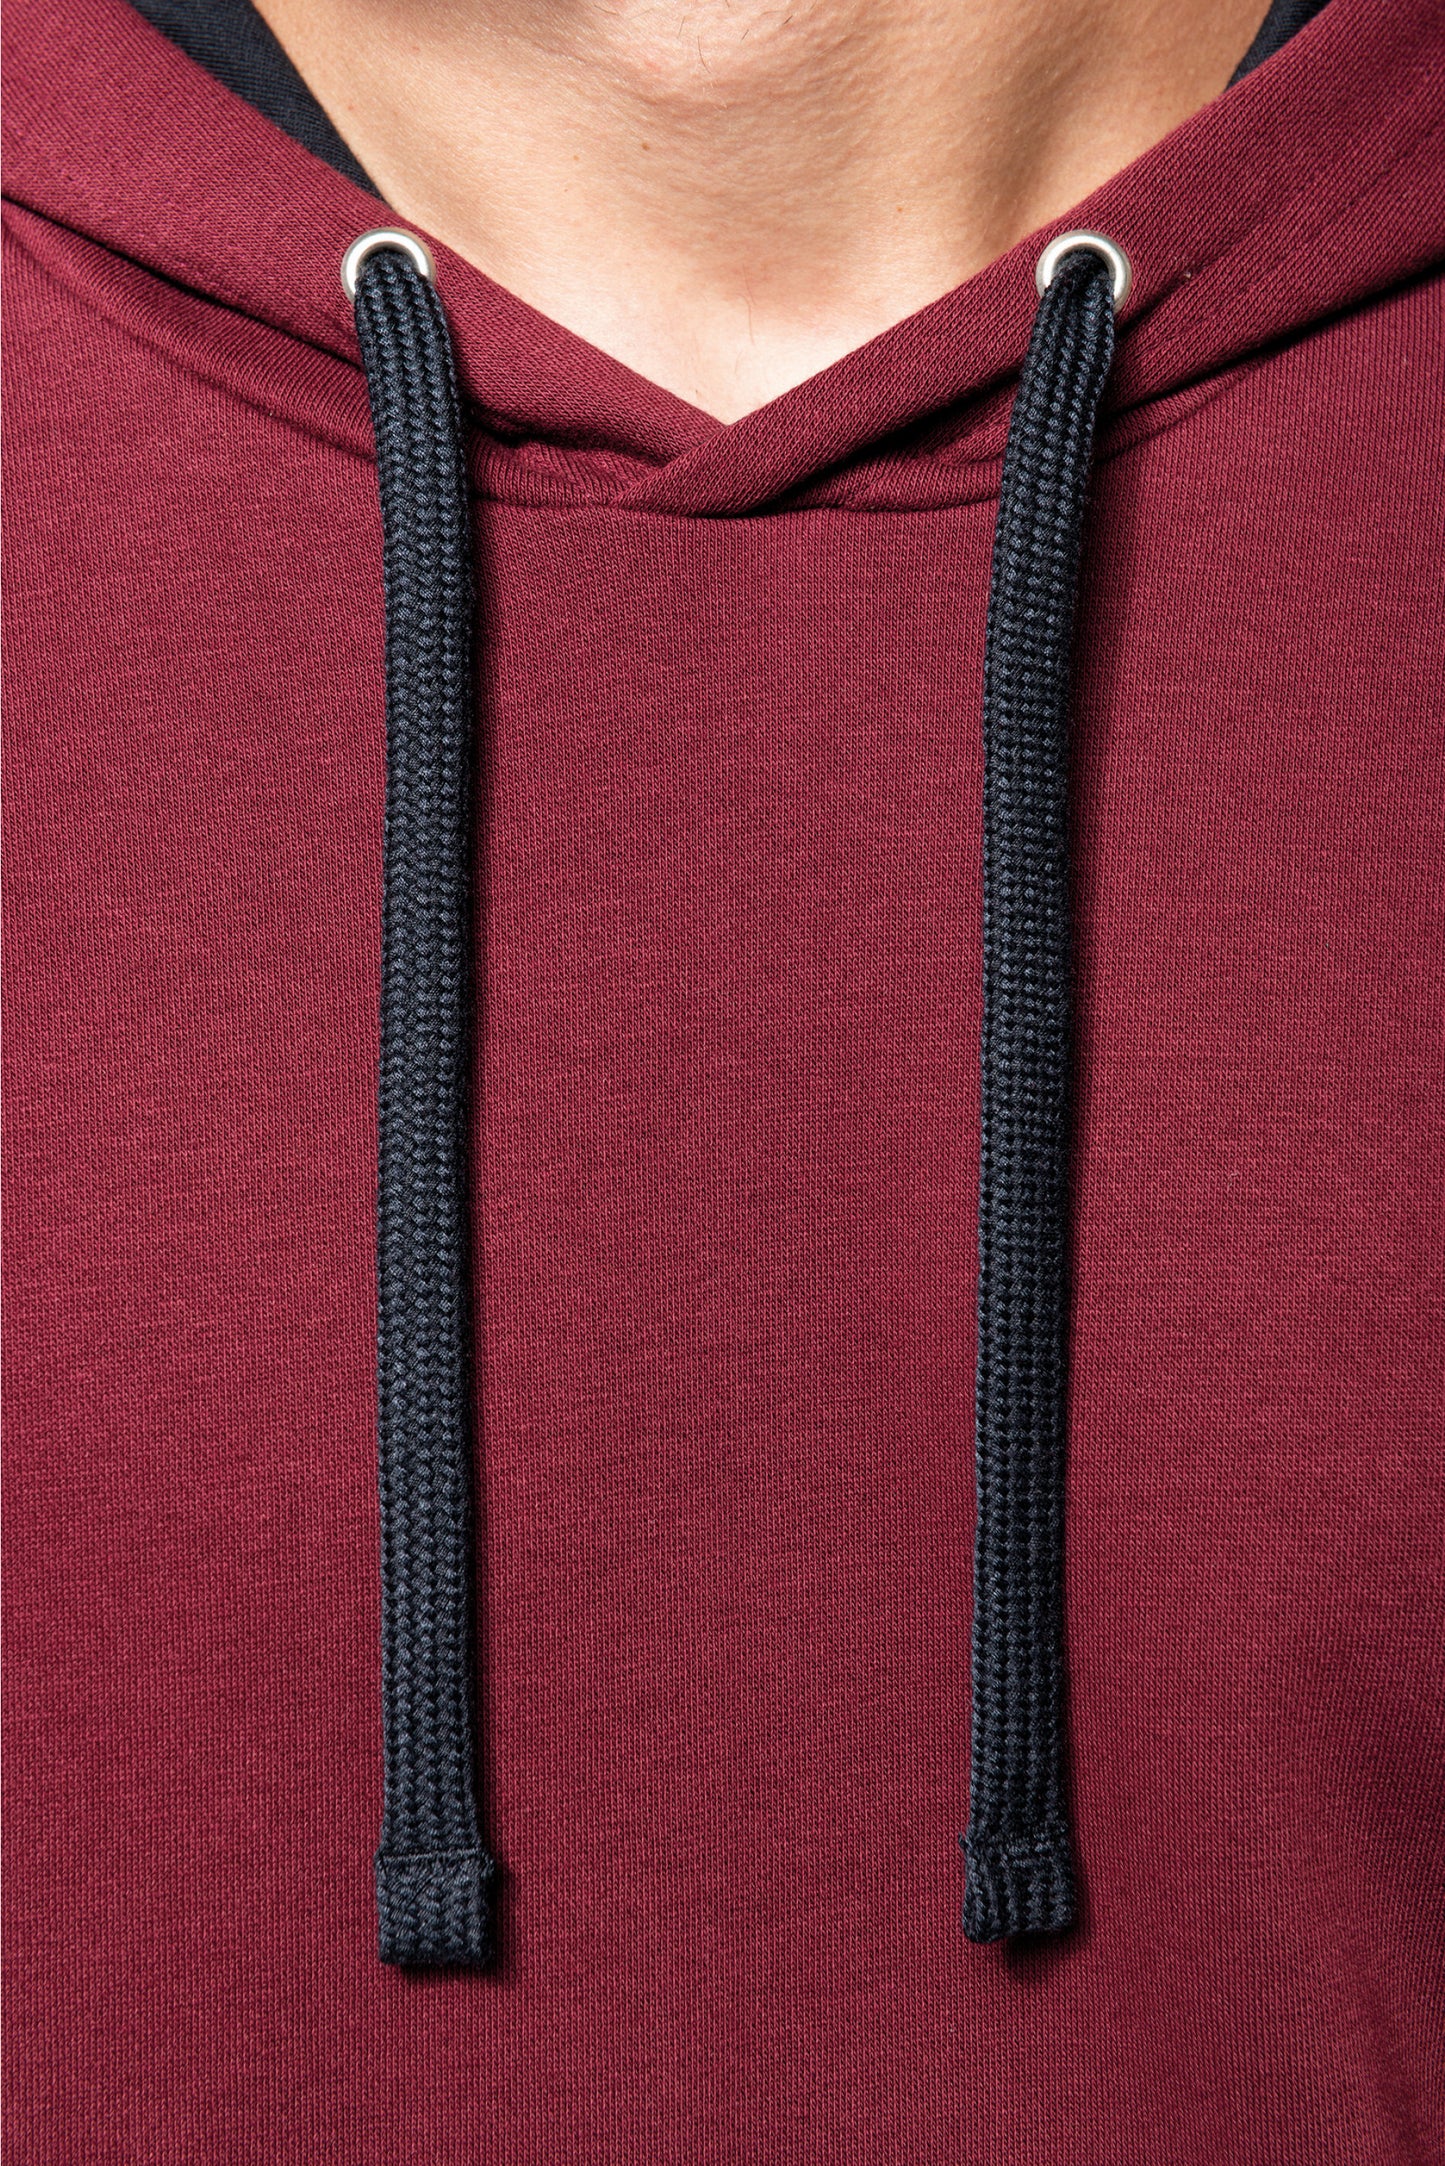 K446 - Sweat-shirt capuche contrastée homme